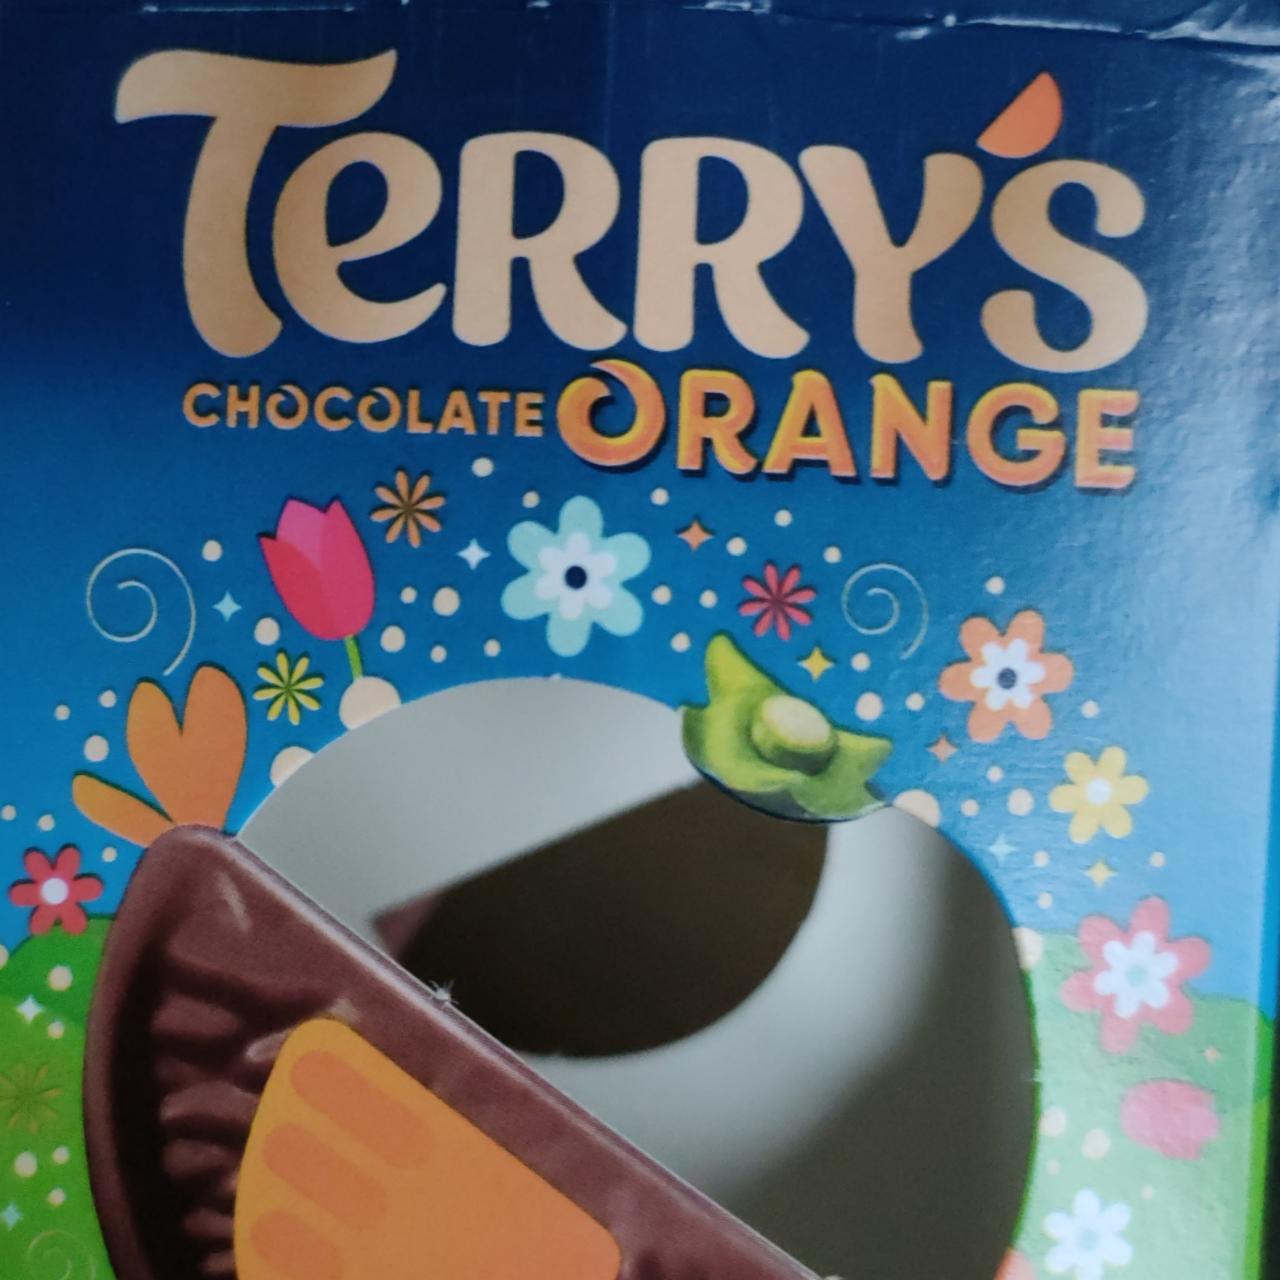 Zdjęcia - Terry's chocolate orange